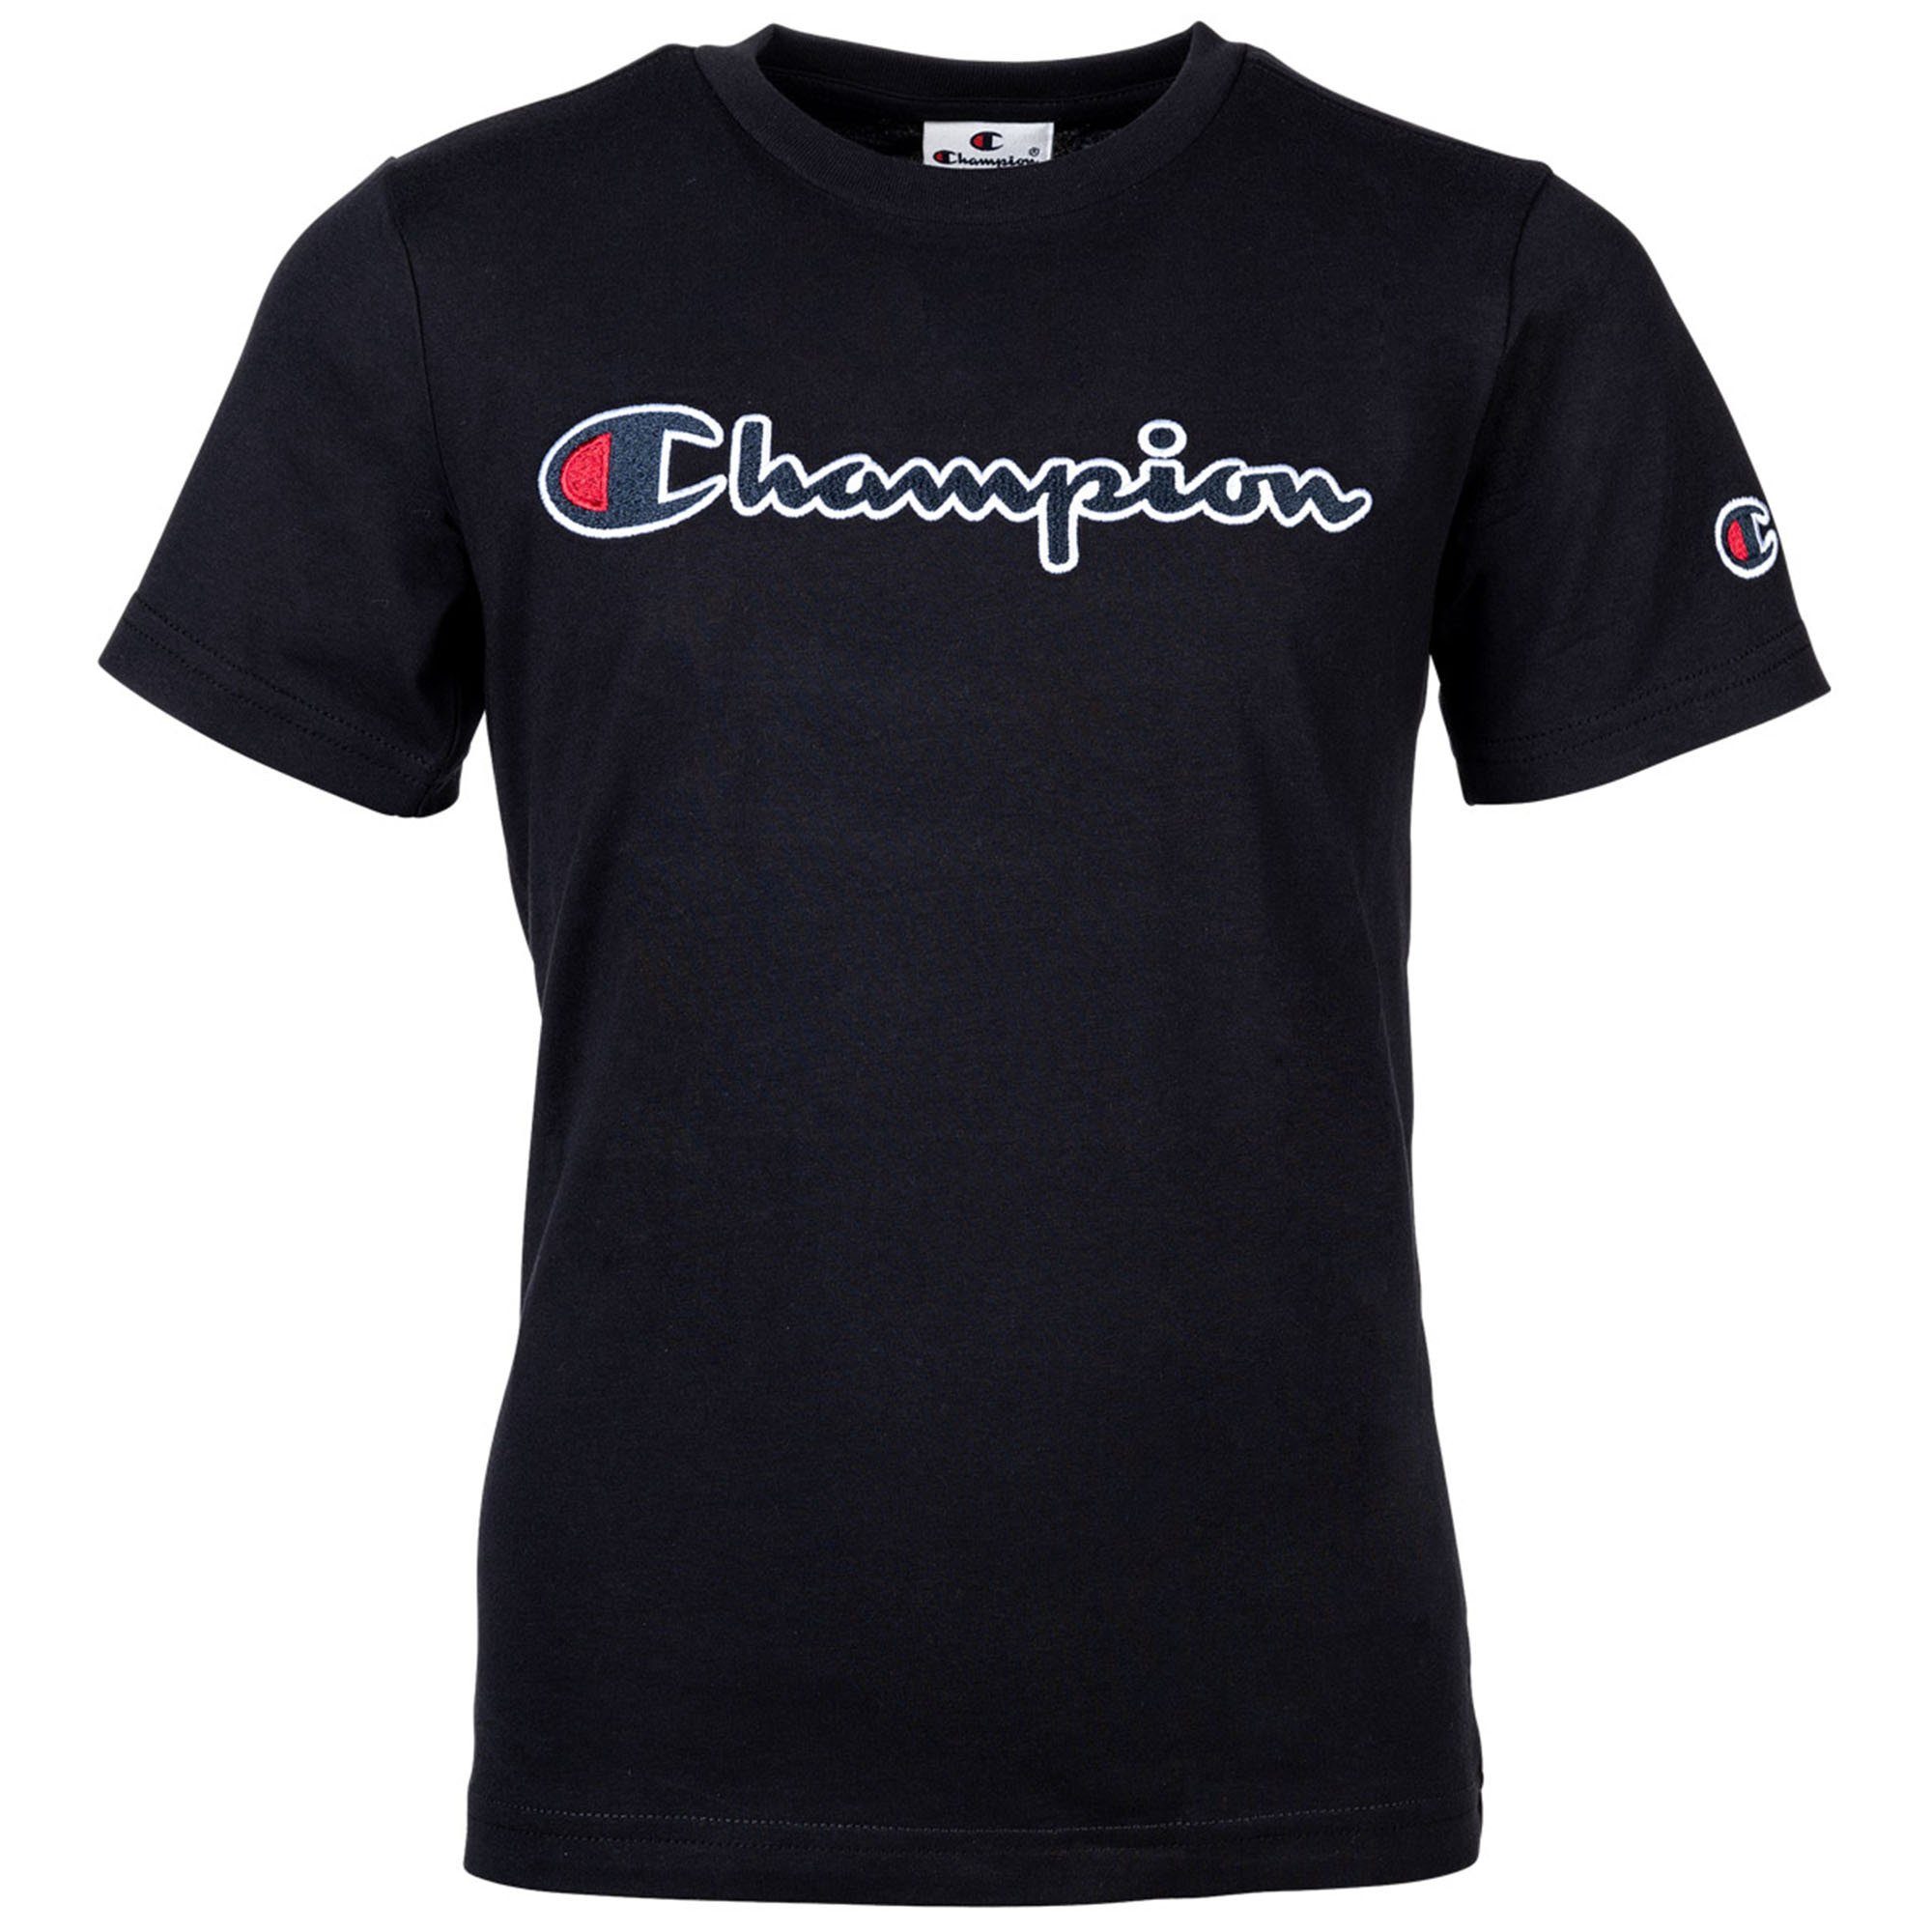 Champion T-Shirt Kinder Unisex T-Shirt - Crewneck, Rundhals